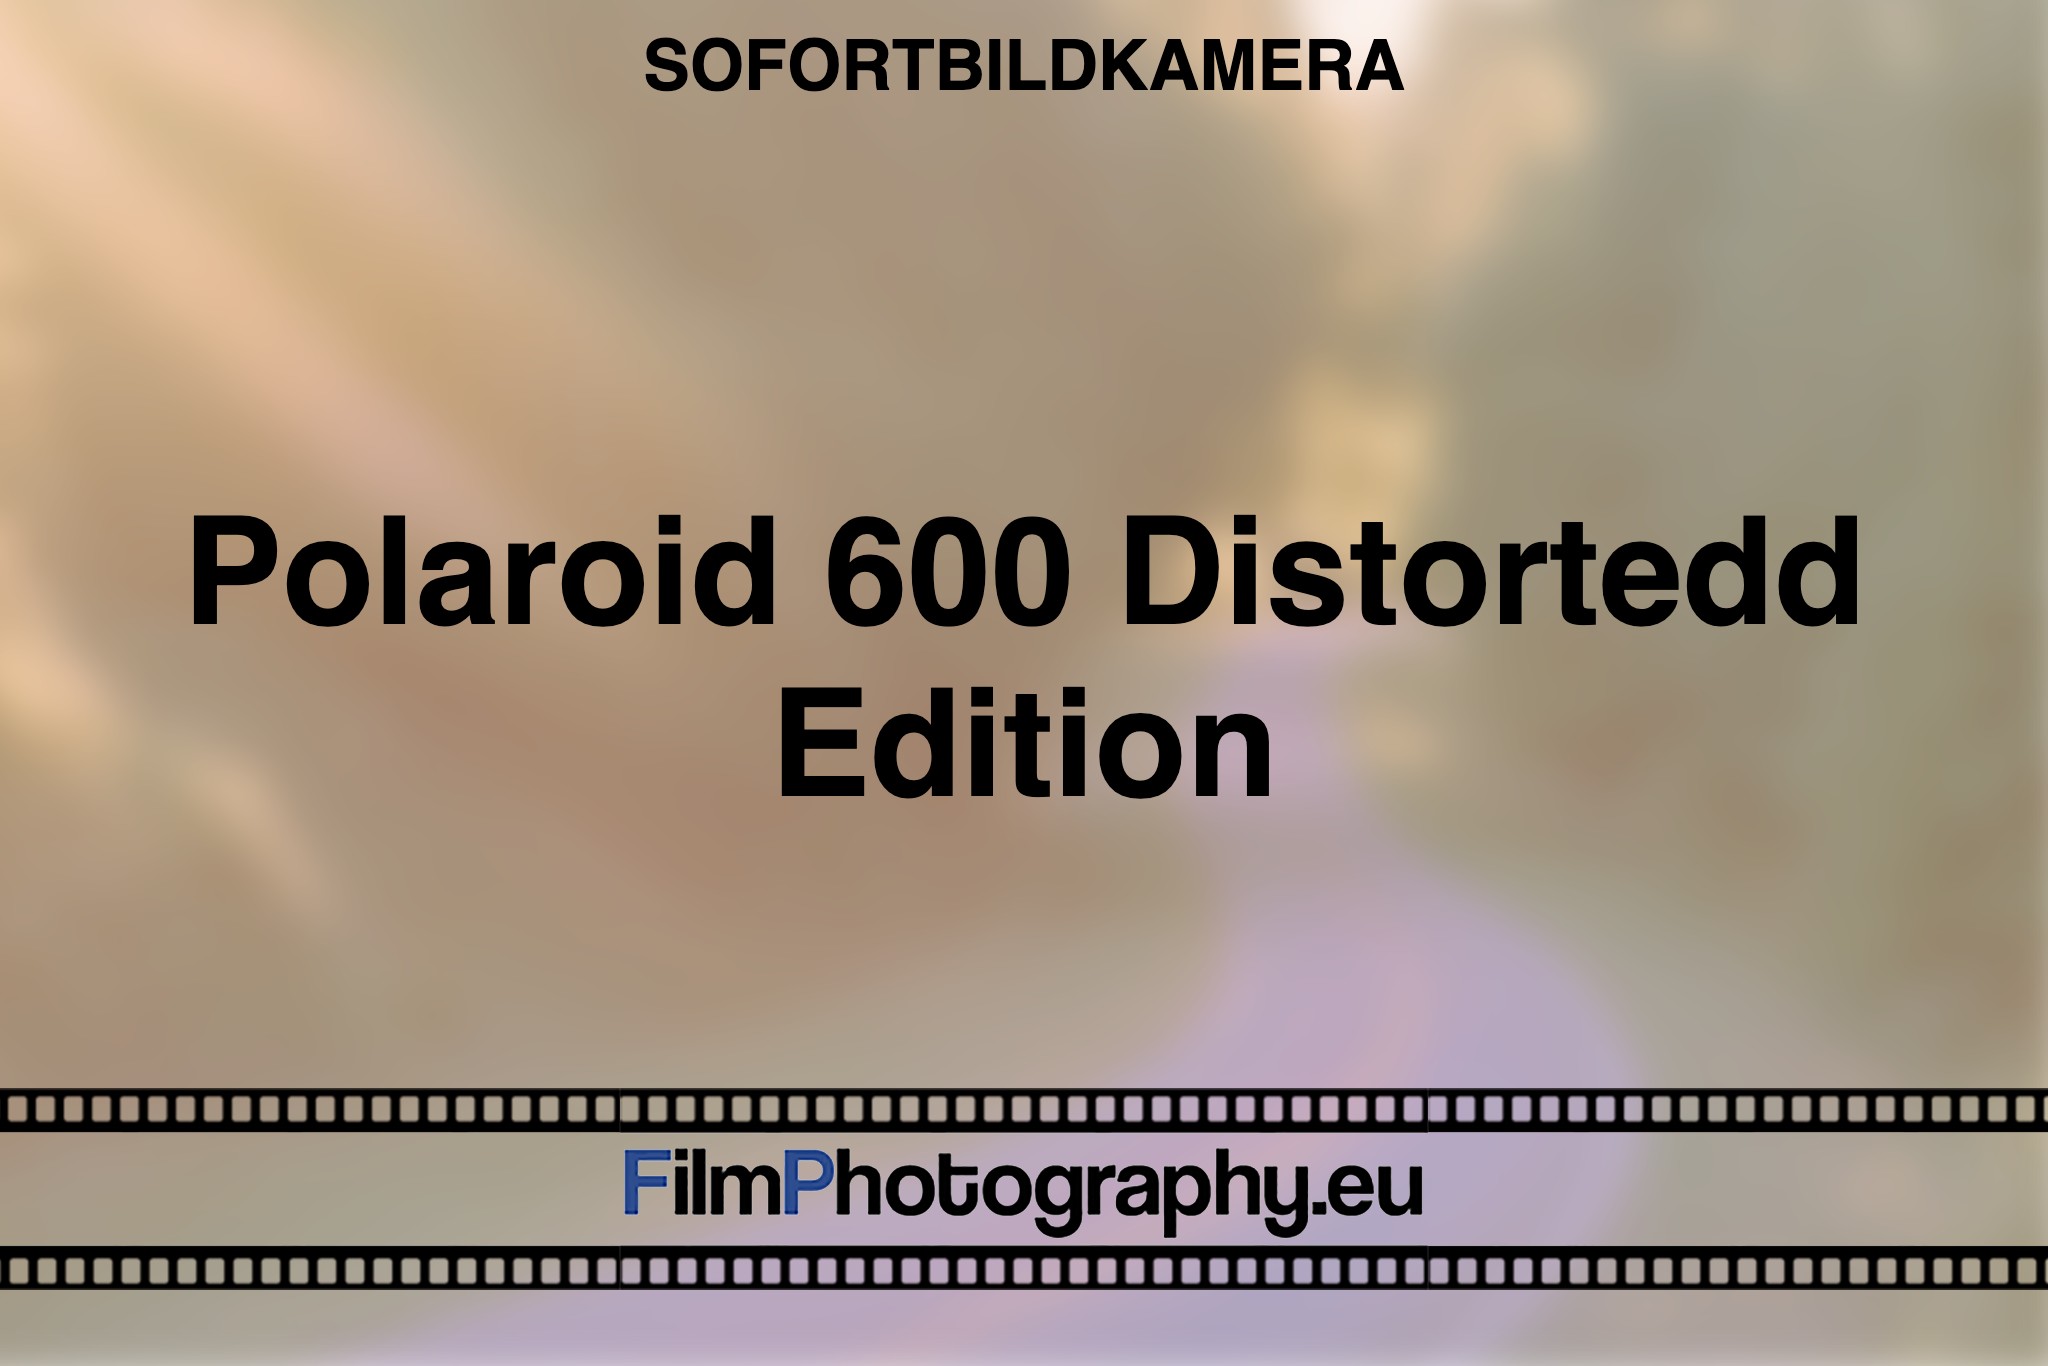 polaroid-600-distortedd-edition-sofortbildkamera-bnv